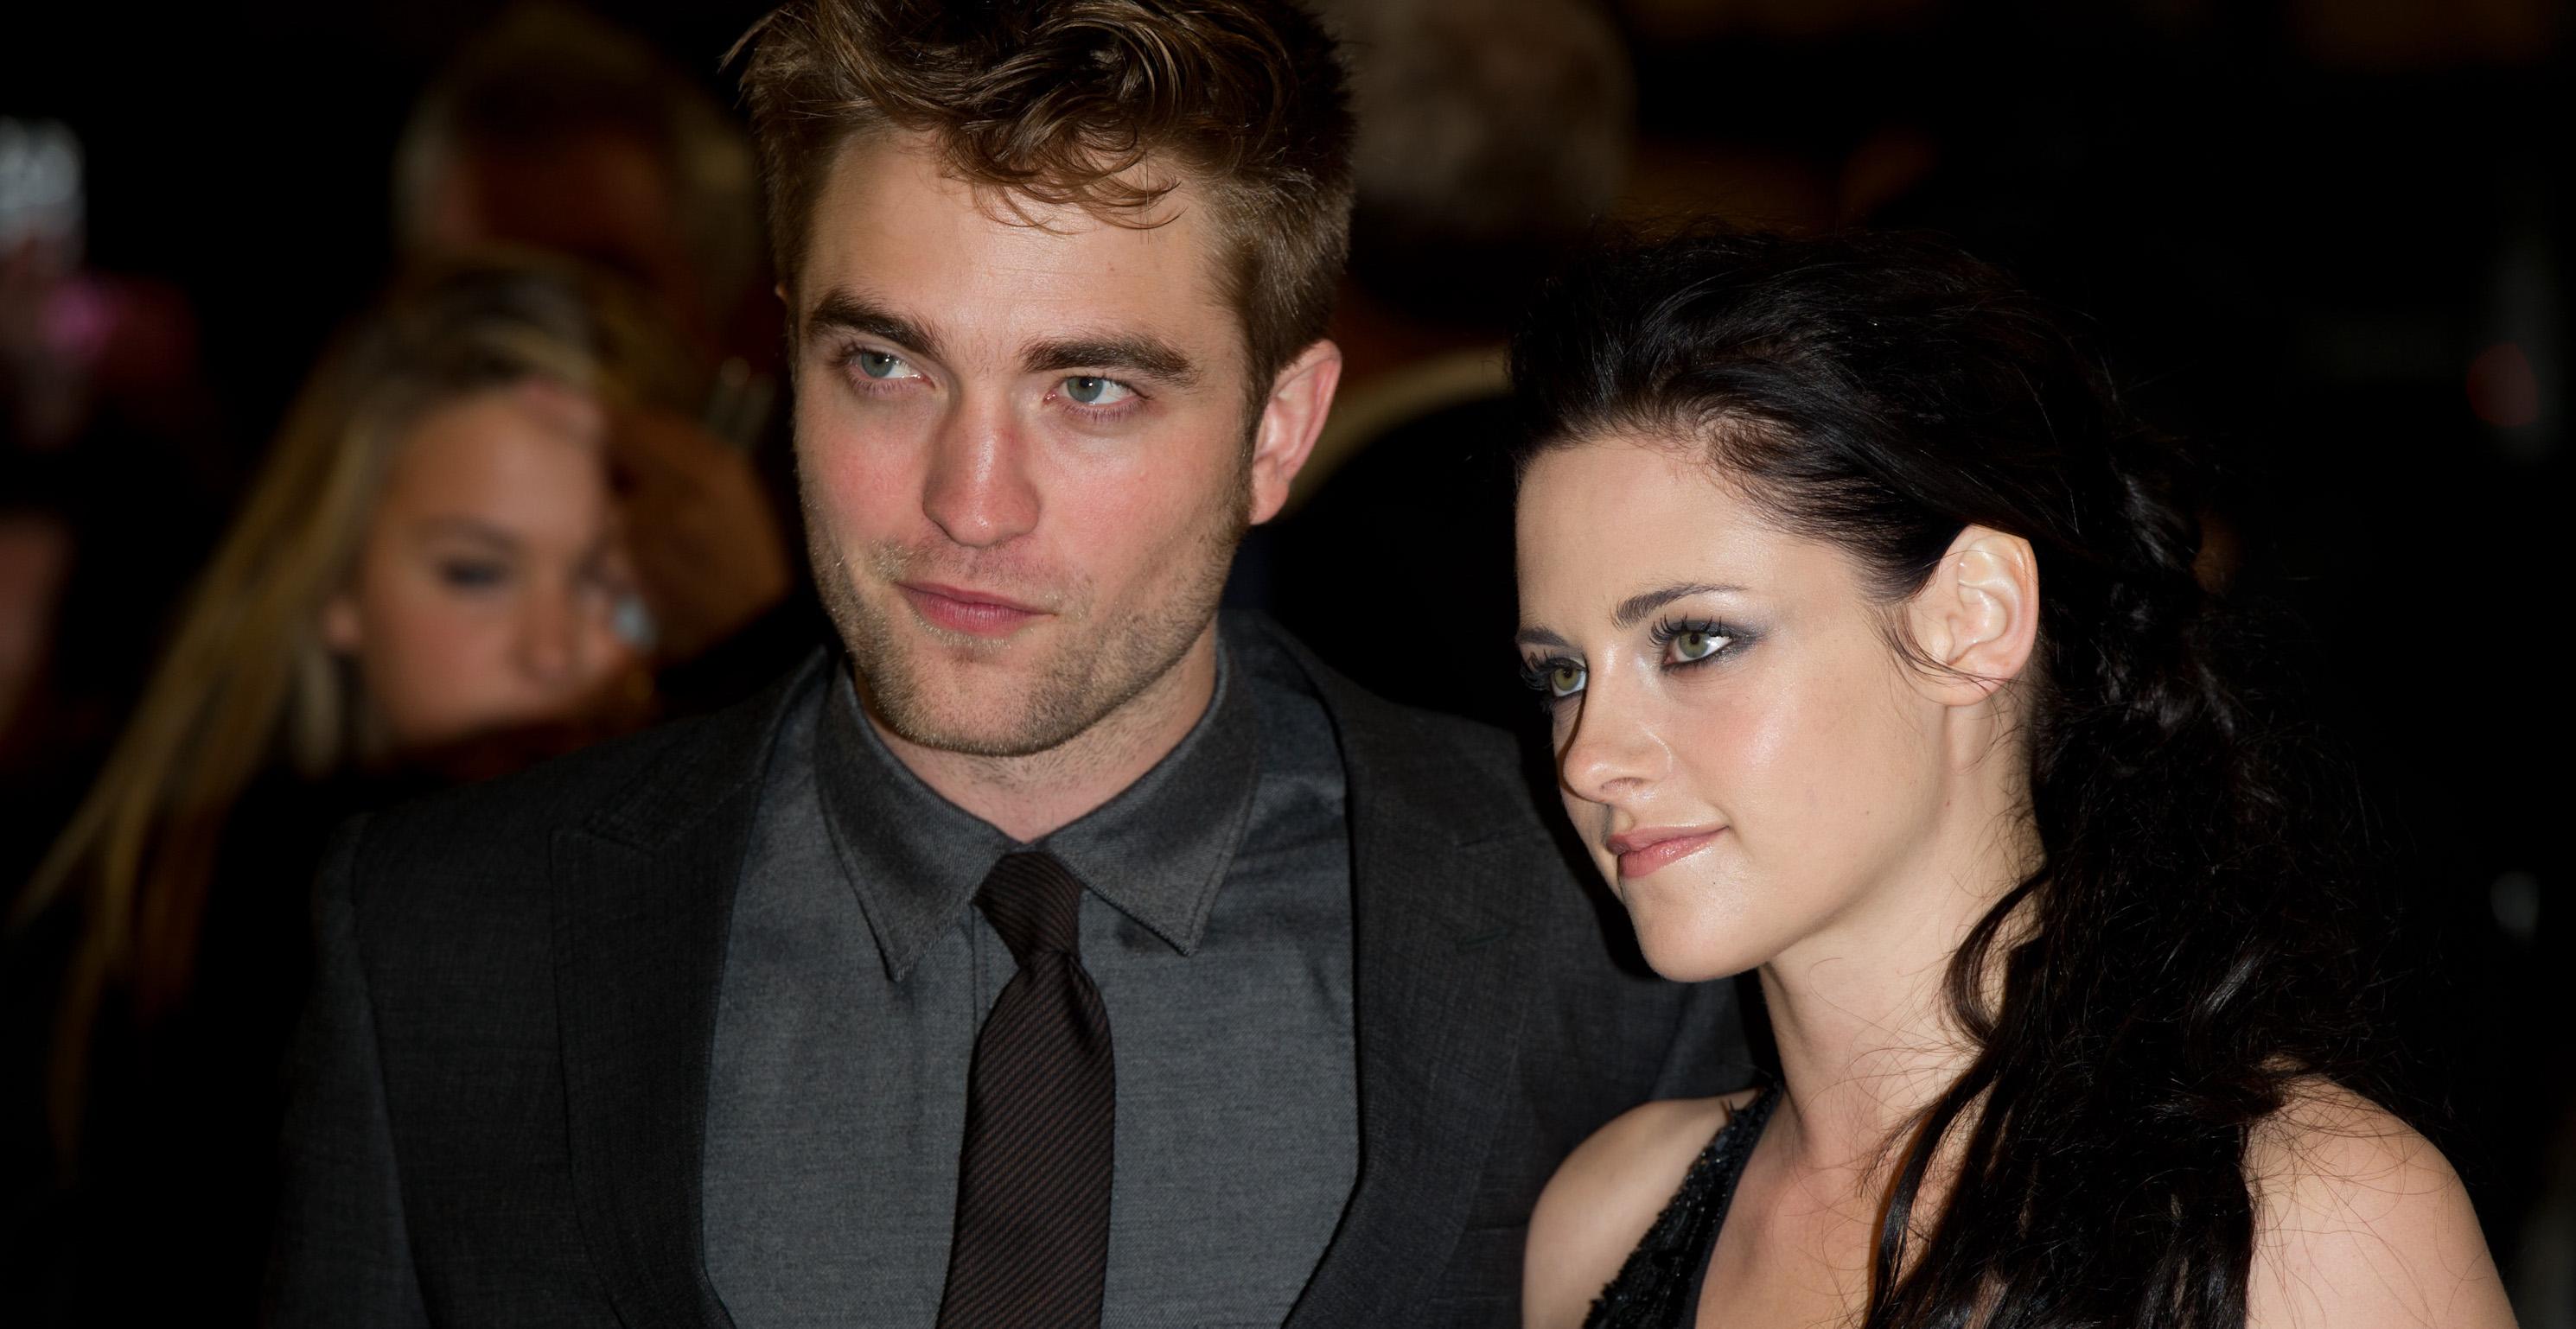 Were Kristen Stewart And Robert Pattinson Ever Engaged